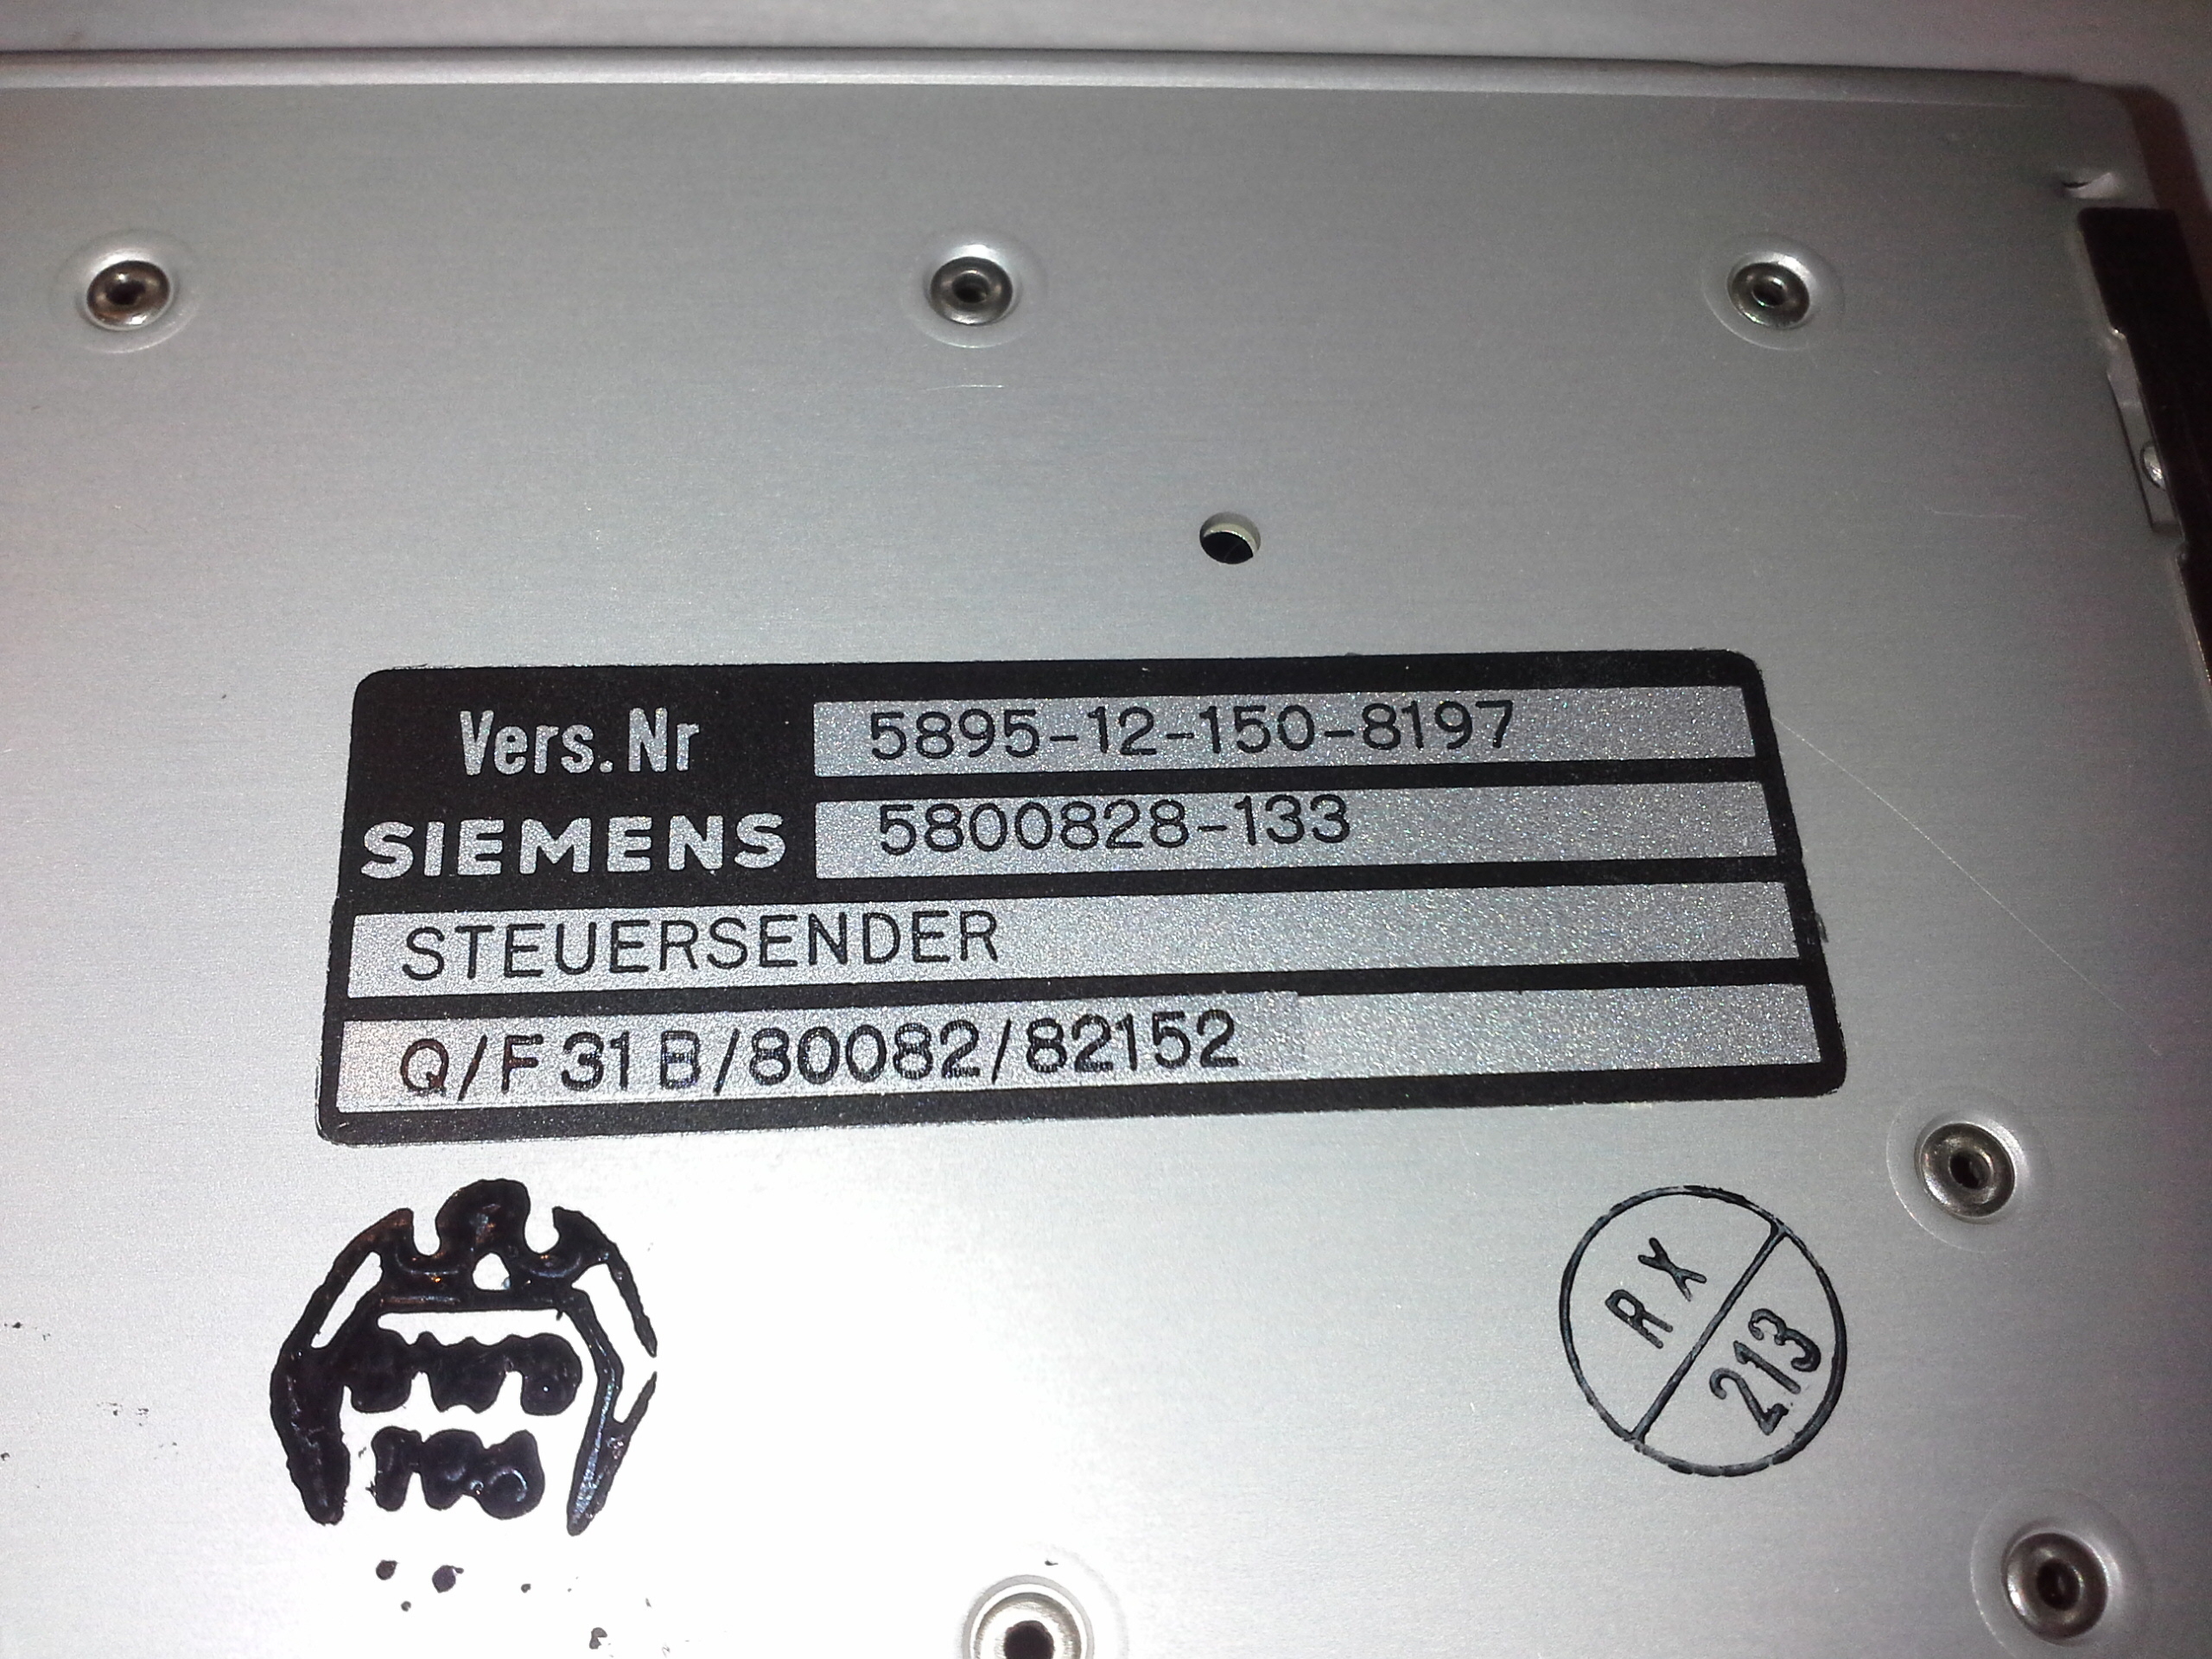 Siemens Steuersender 5800828-133